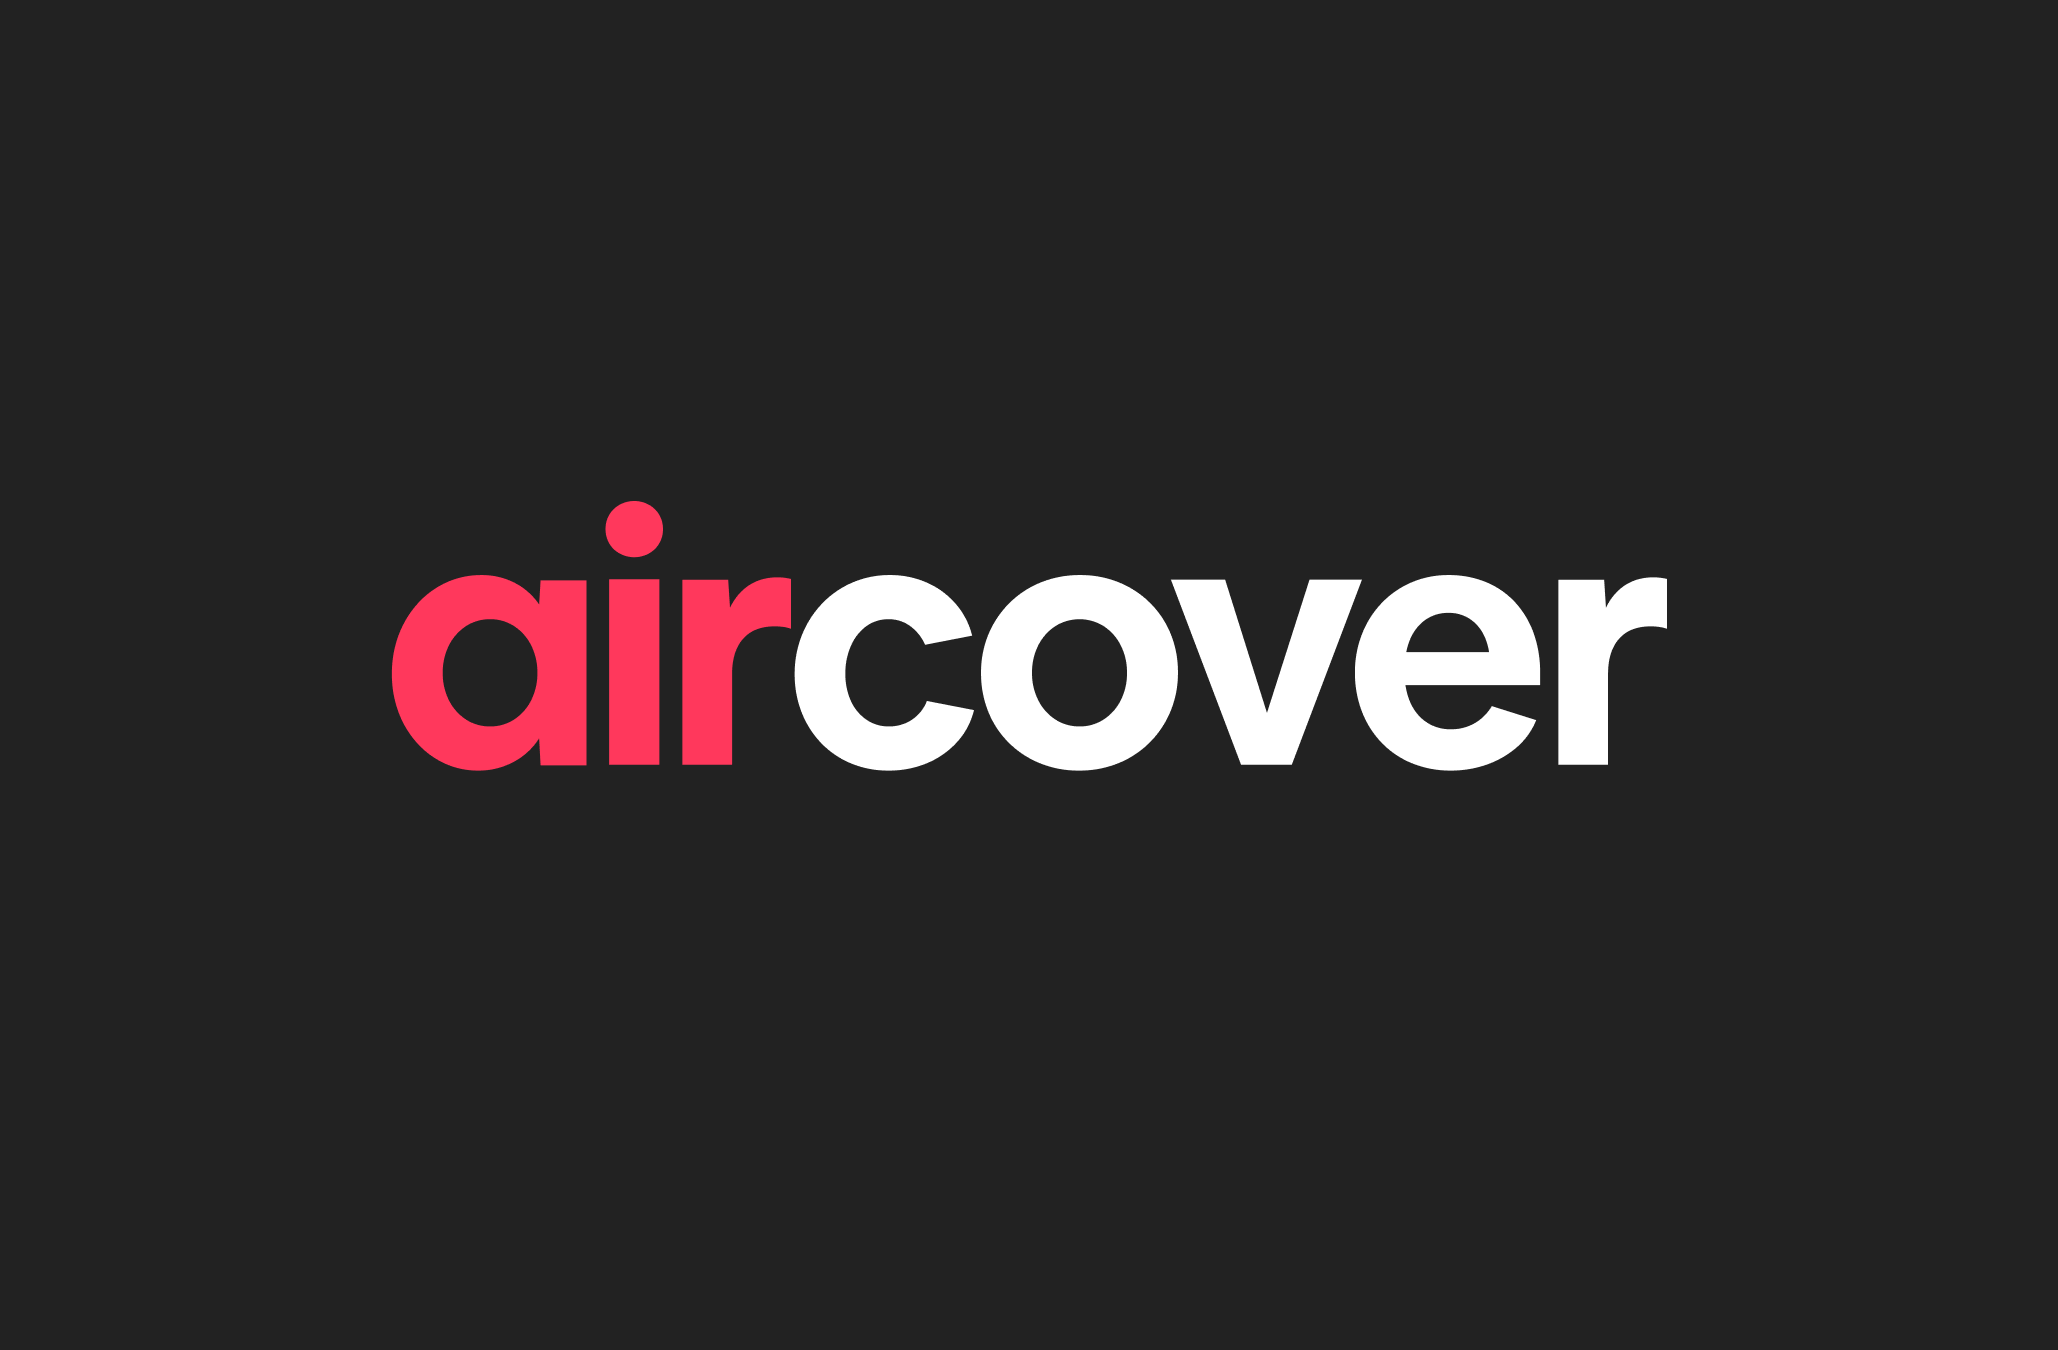 El logo de AirCover, en letras rojas y blancas, sobre un fondo negro.